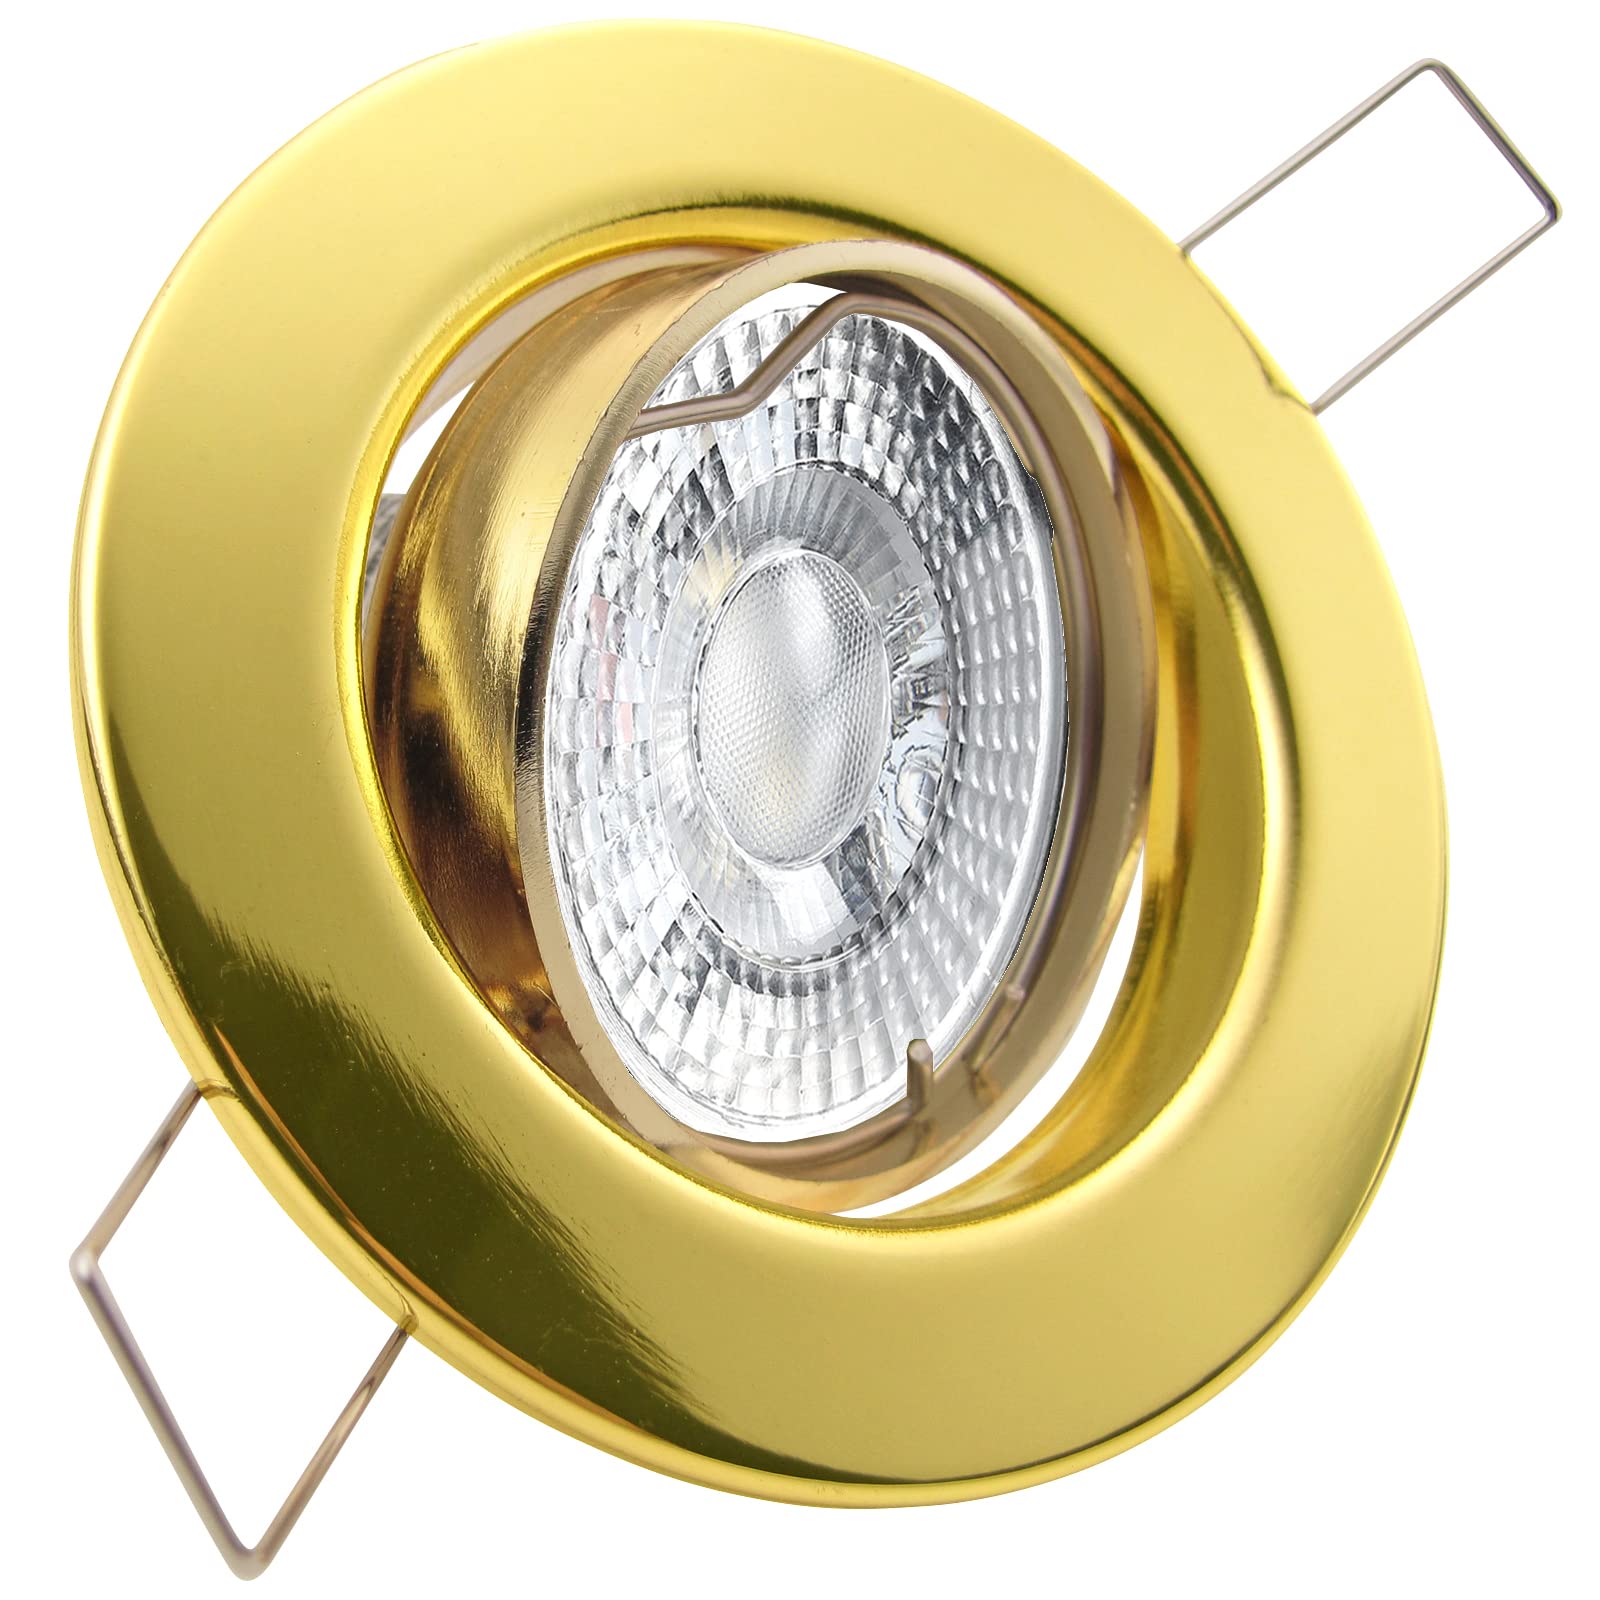 trendlights24 Decora LED Einbaustrahler 230V Gold Messing rund 3er Set - Spots 4W 405 lm 38-45° GU10 Neutralweiß - Decken Einbauleuchte schwenkbar